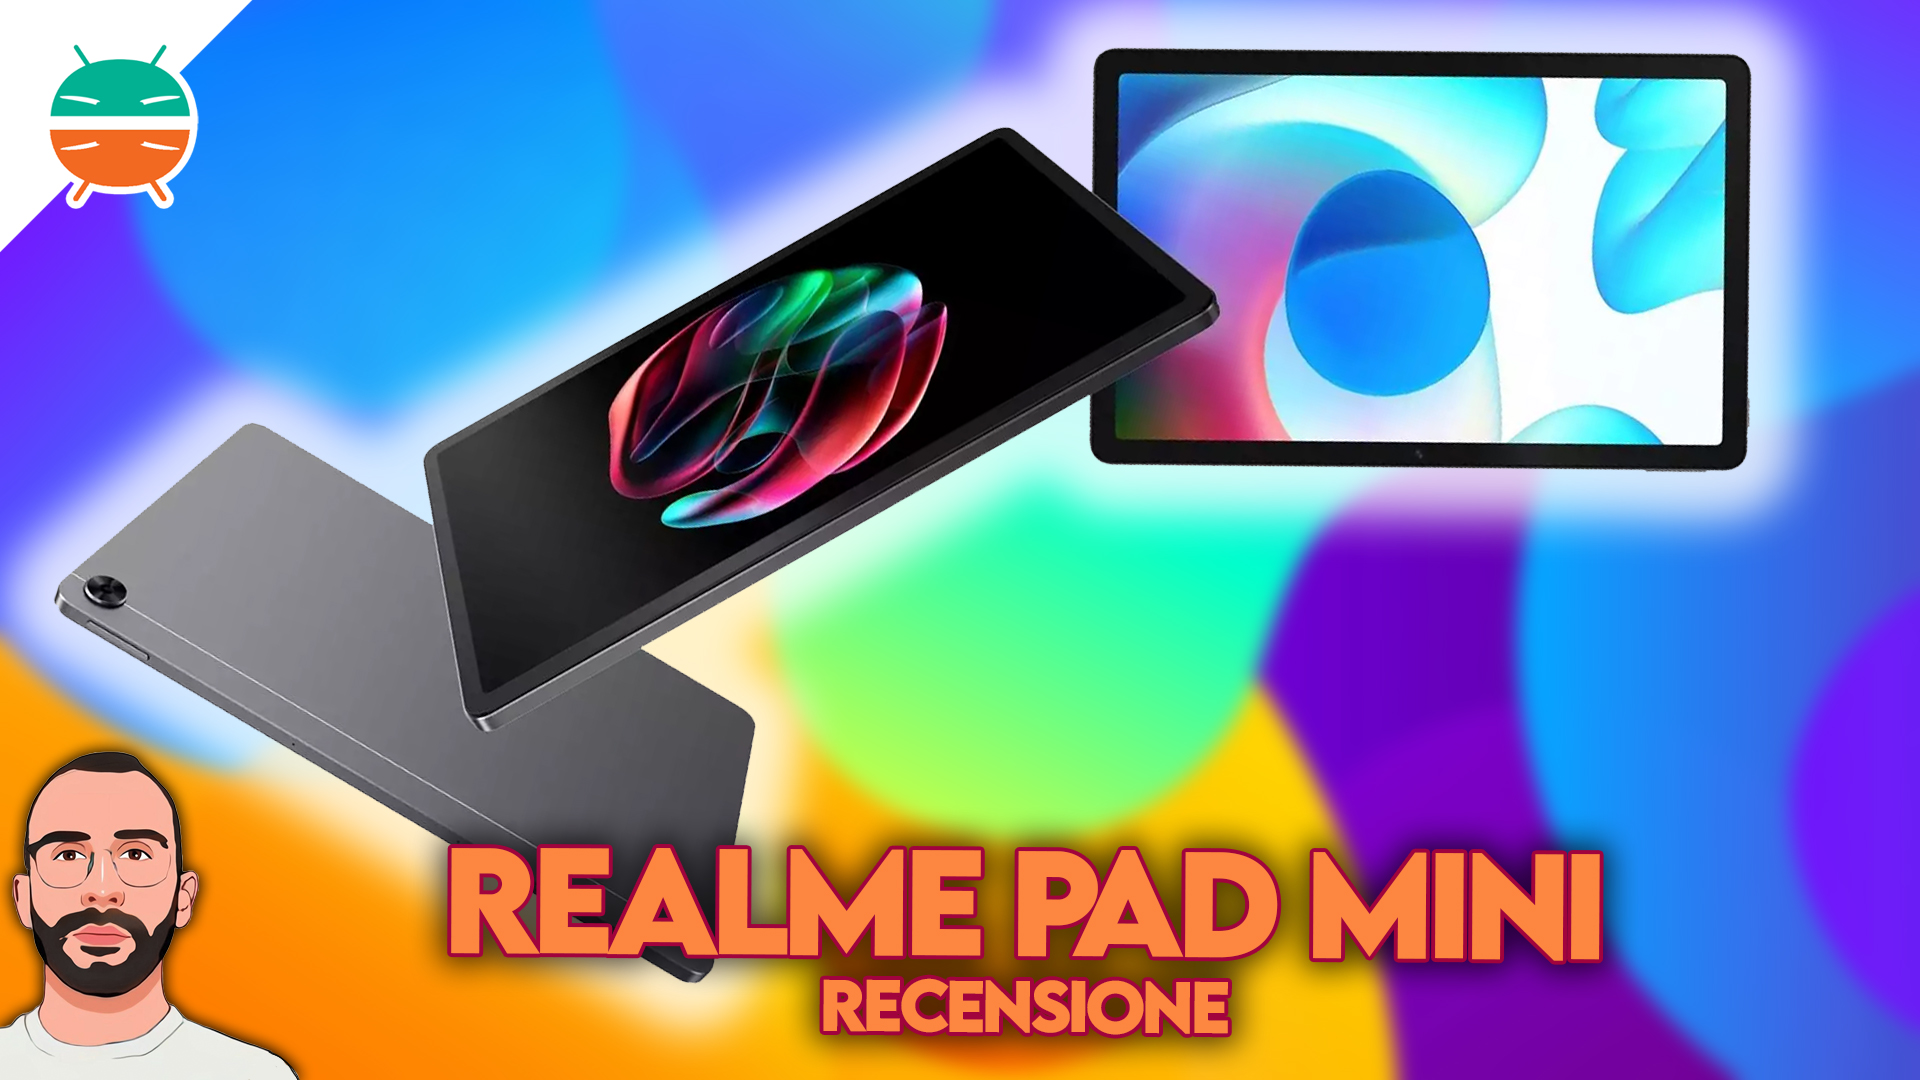 Recensione Realme Pad Mini: specifiche, prestazioni e prezzo